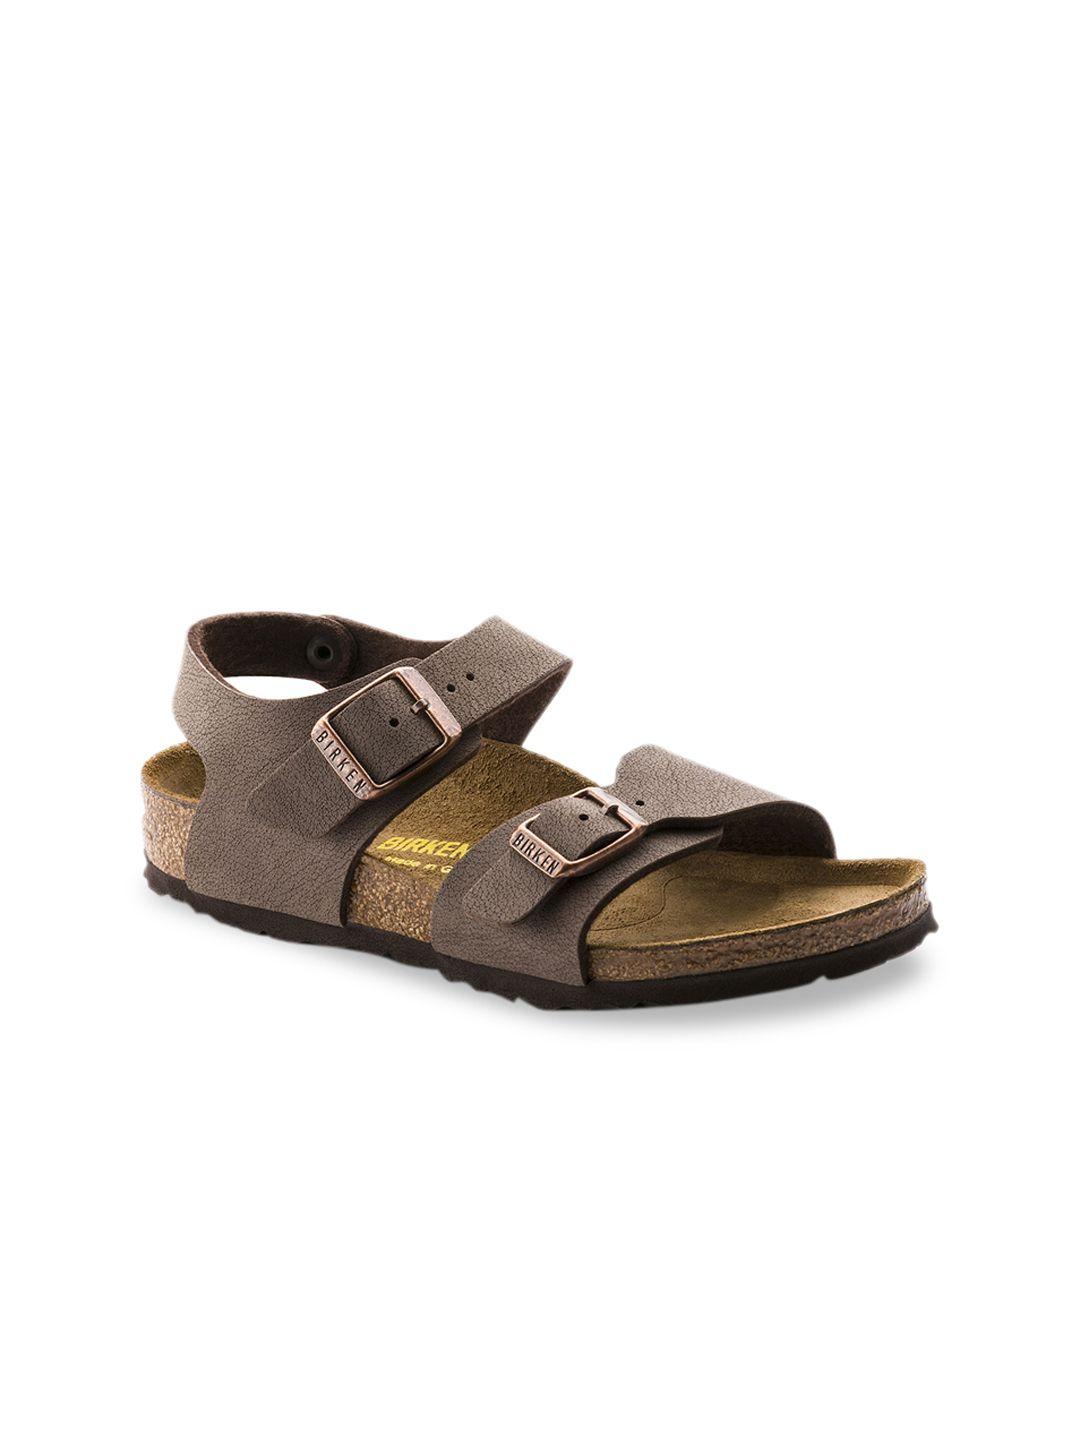 birkenstock boys brown solid new birko-flor nubuck regular width new york comfort sandals